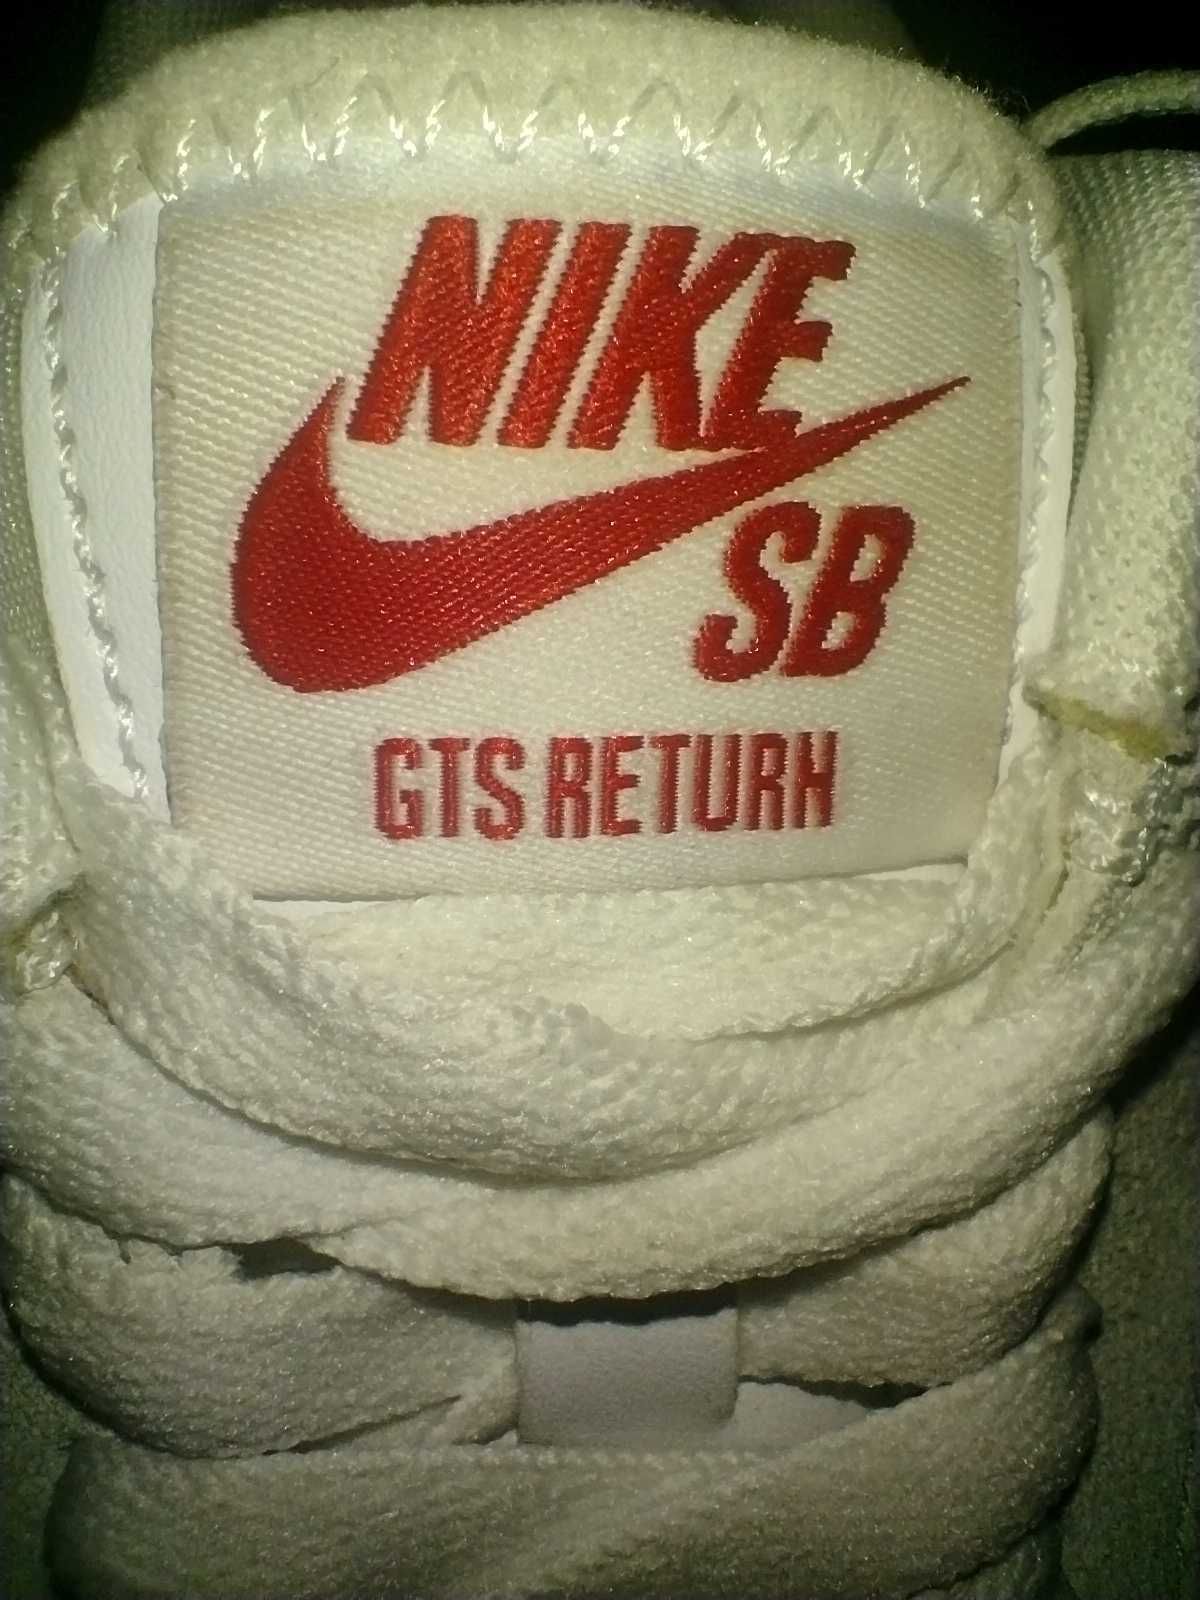 Buty Nike SB GTS Return Premium - Czerwony rozm. eur. 39